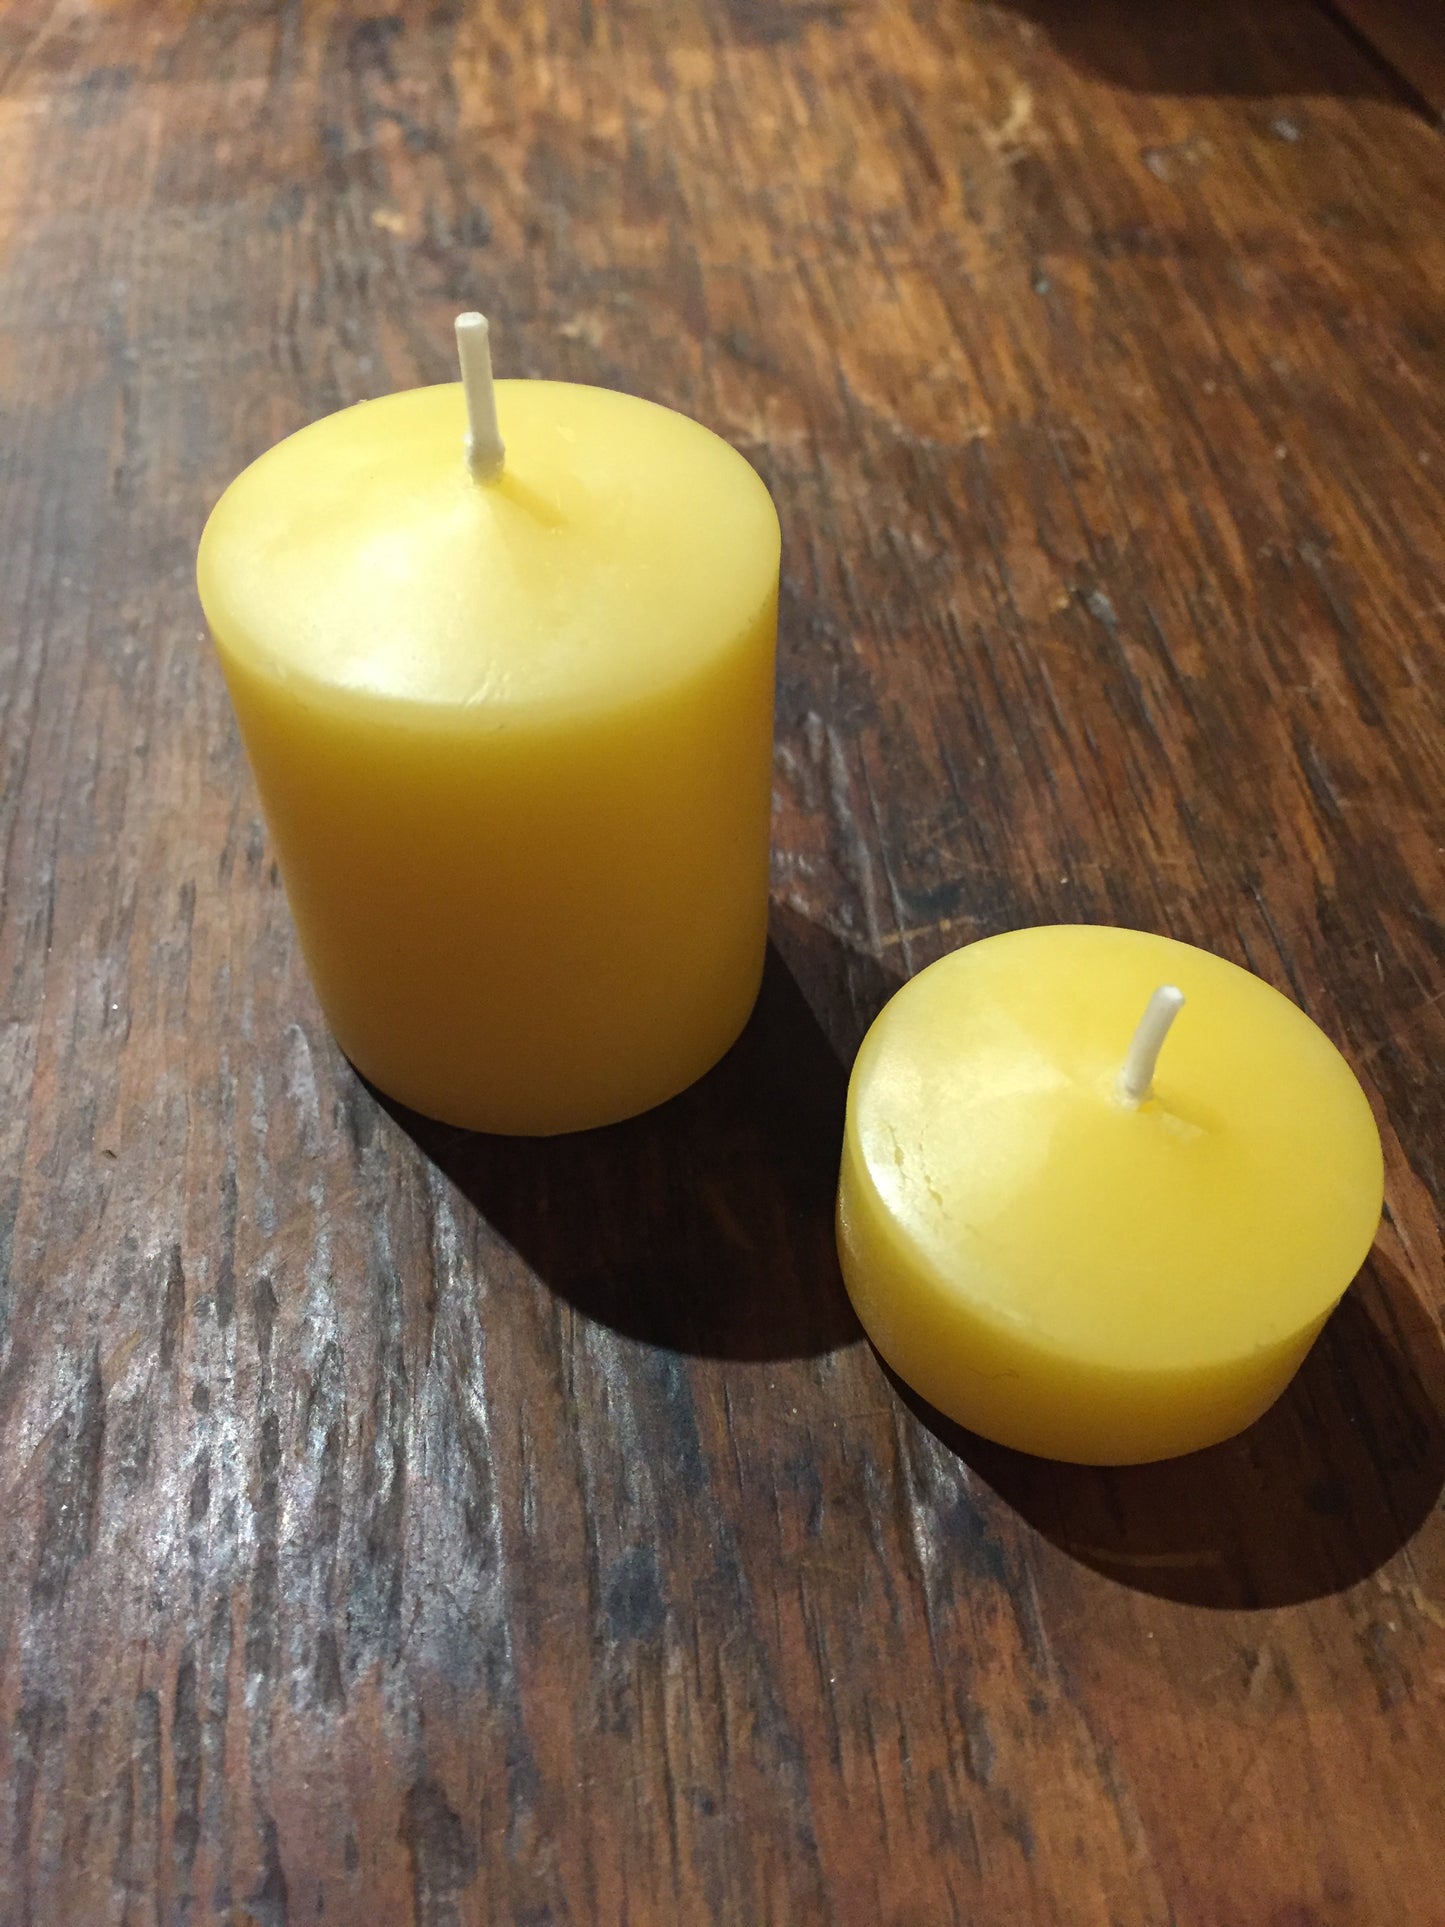 Beeswax Candles - 3 VOTIVE PILLAR CANDLES